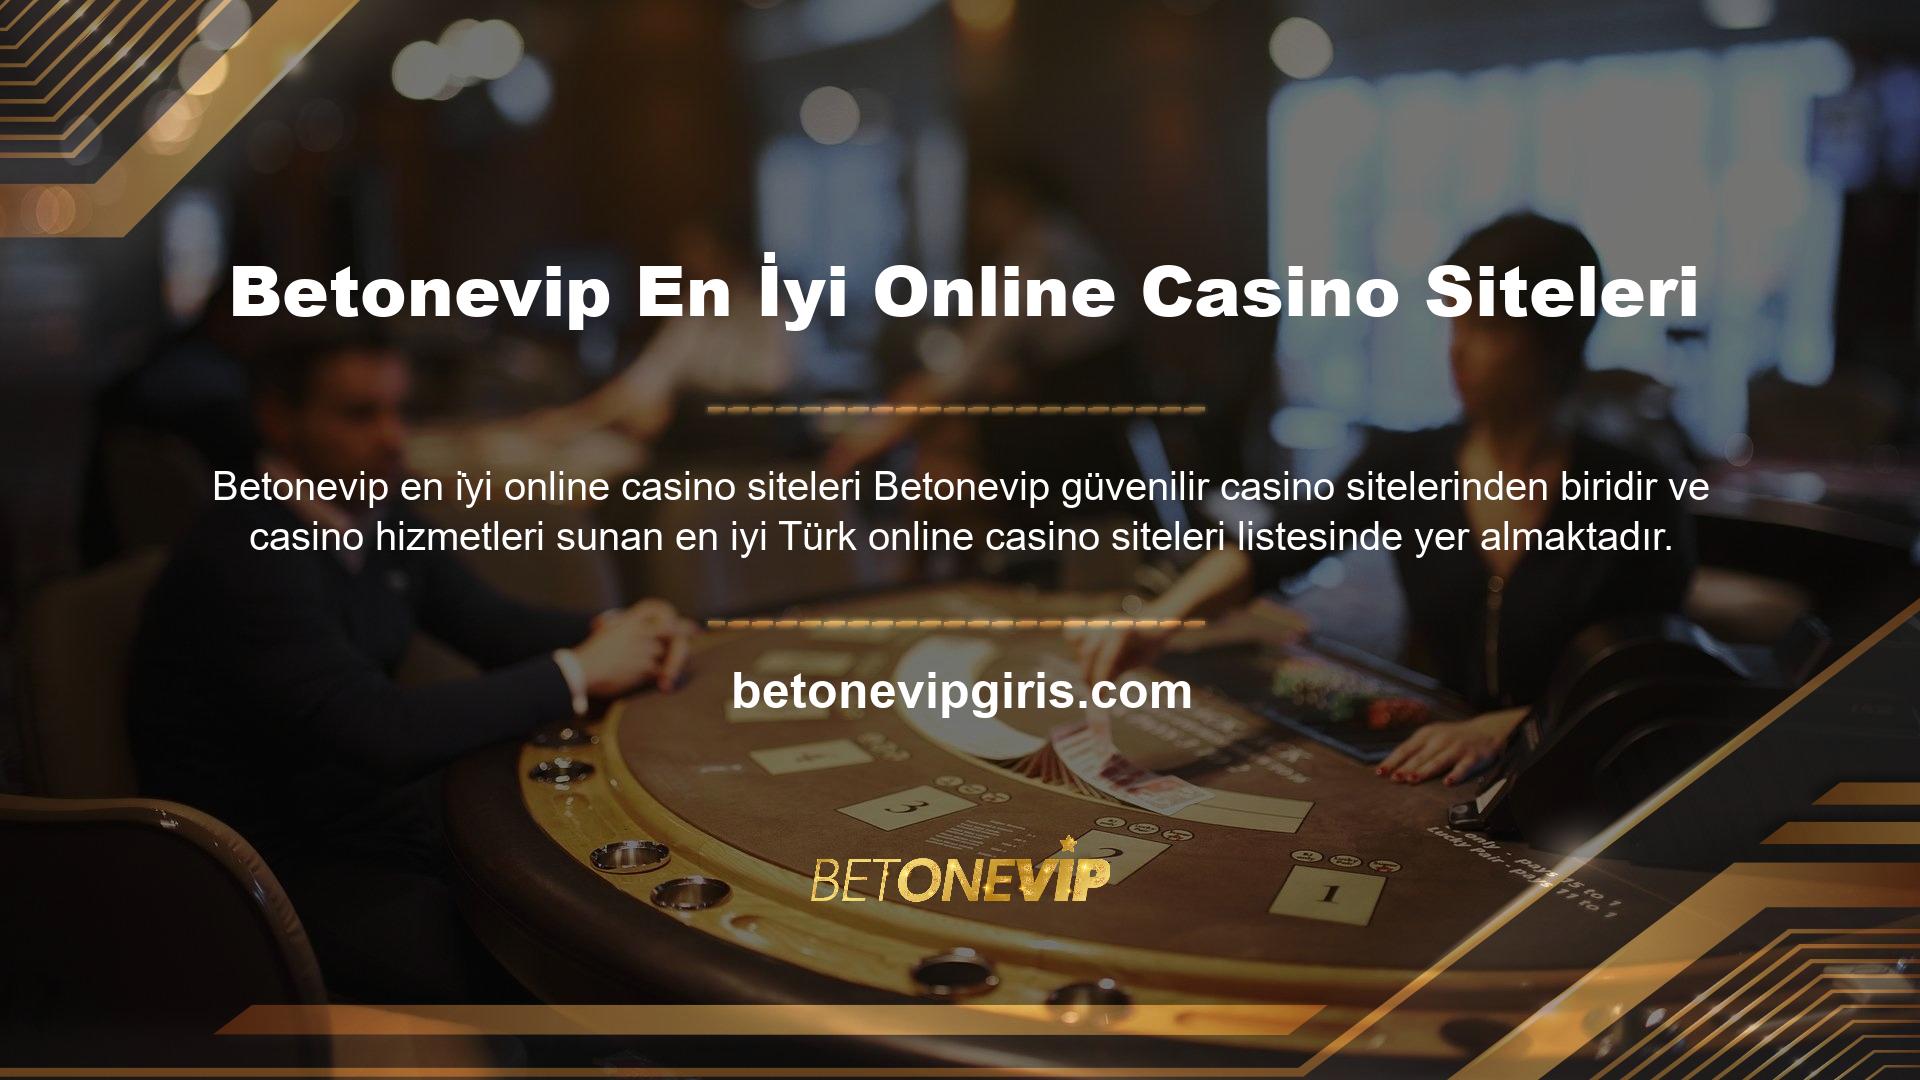 Türk casino tutkunları, online casino oynamak istiyorlarsa yabancı bahis sitelerinden birini seçerken Betonevip tercih ediyor